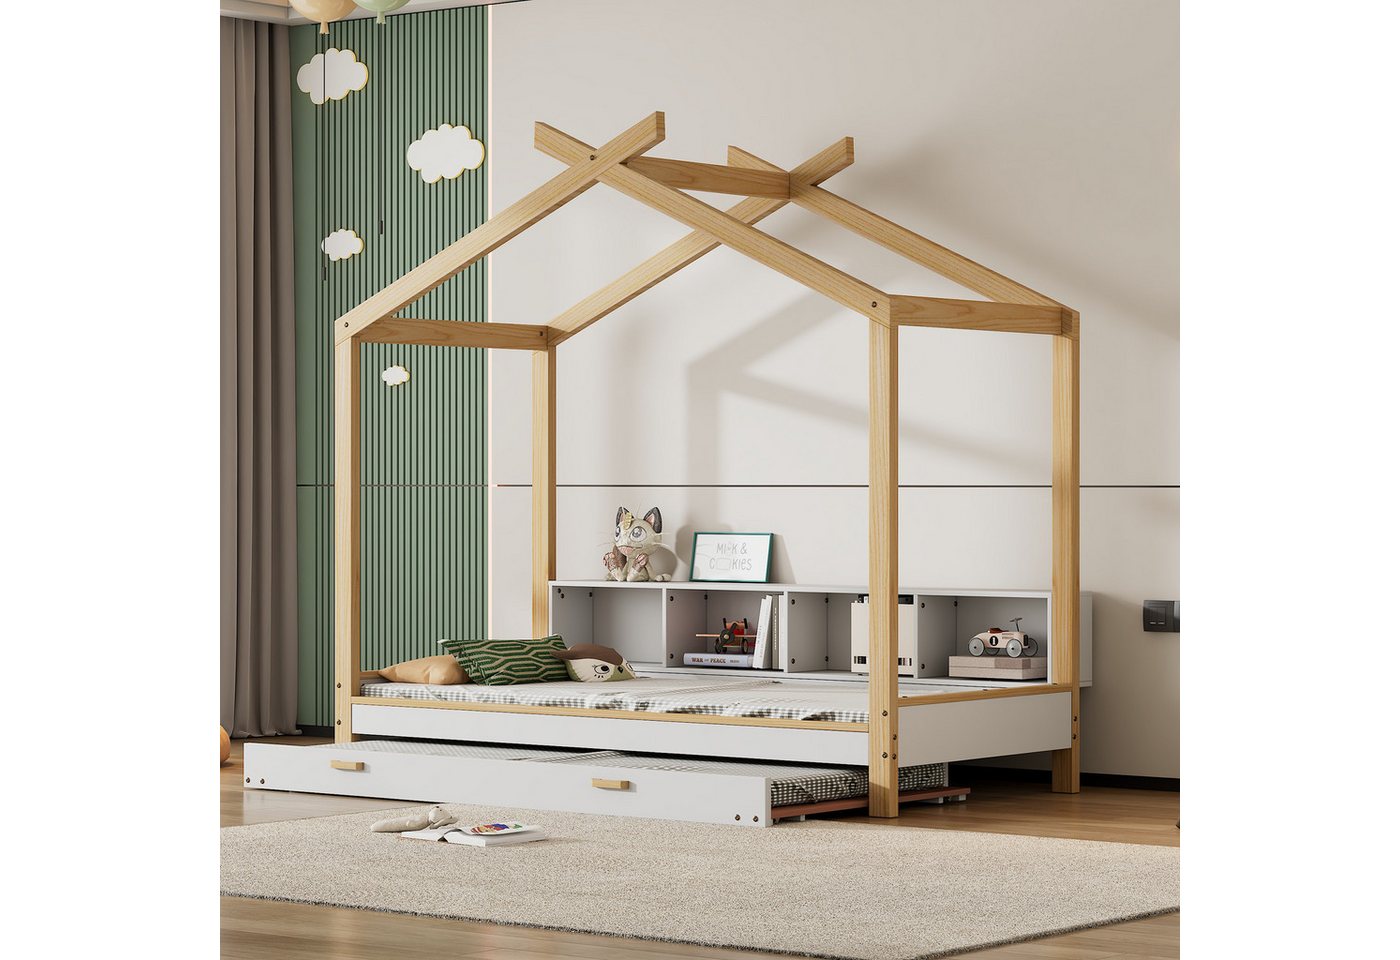 IDEASY Hausbett Robuste 90x200cm Holzbett mit 4 Regalfächern, ausziehbarem (set), Rollbett, Dachdesign, aus Kiefernholz, einfach zu montieren von IDEASY